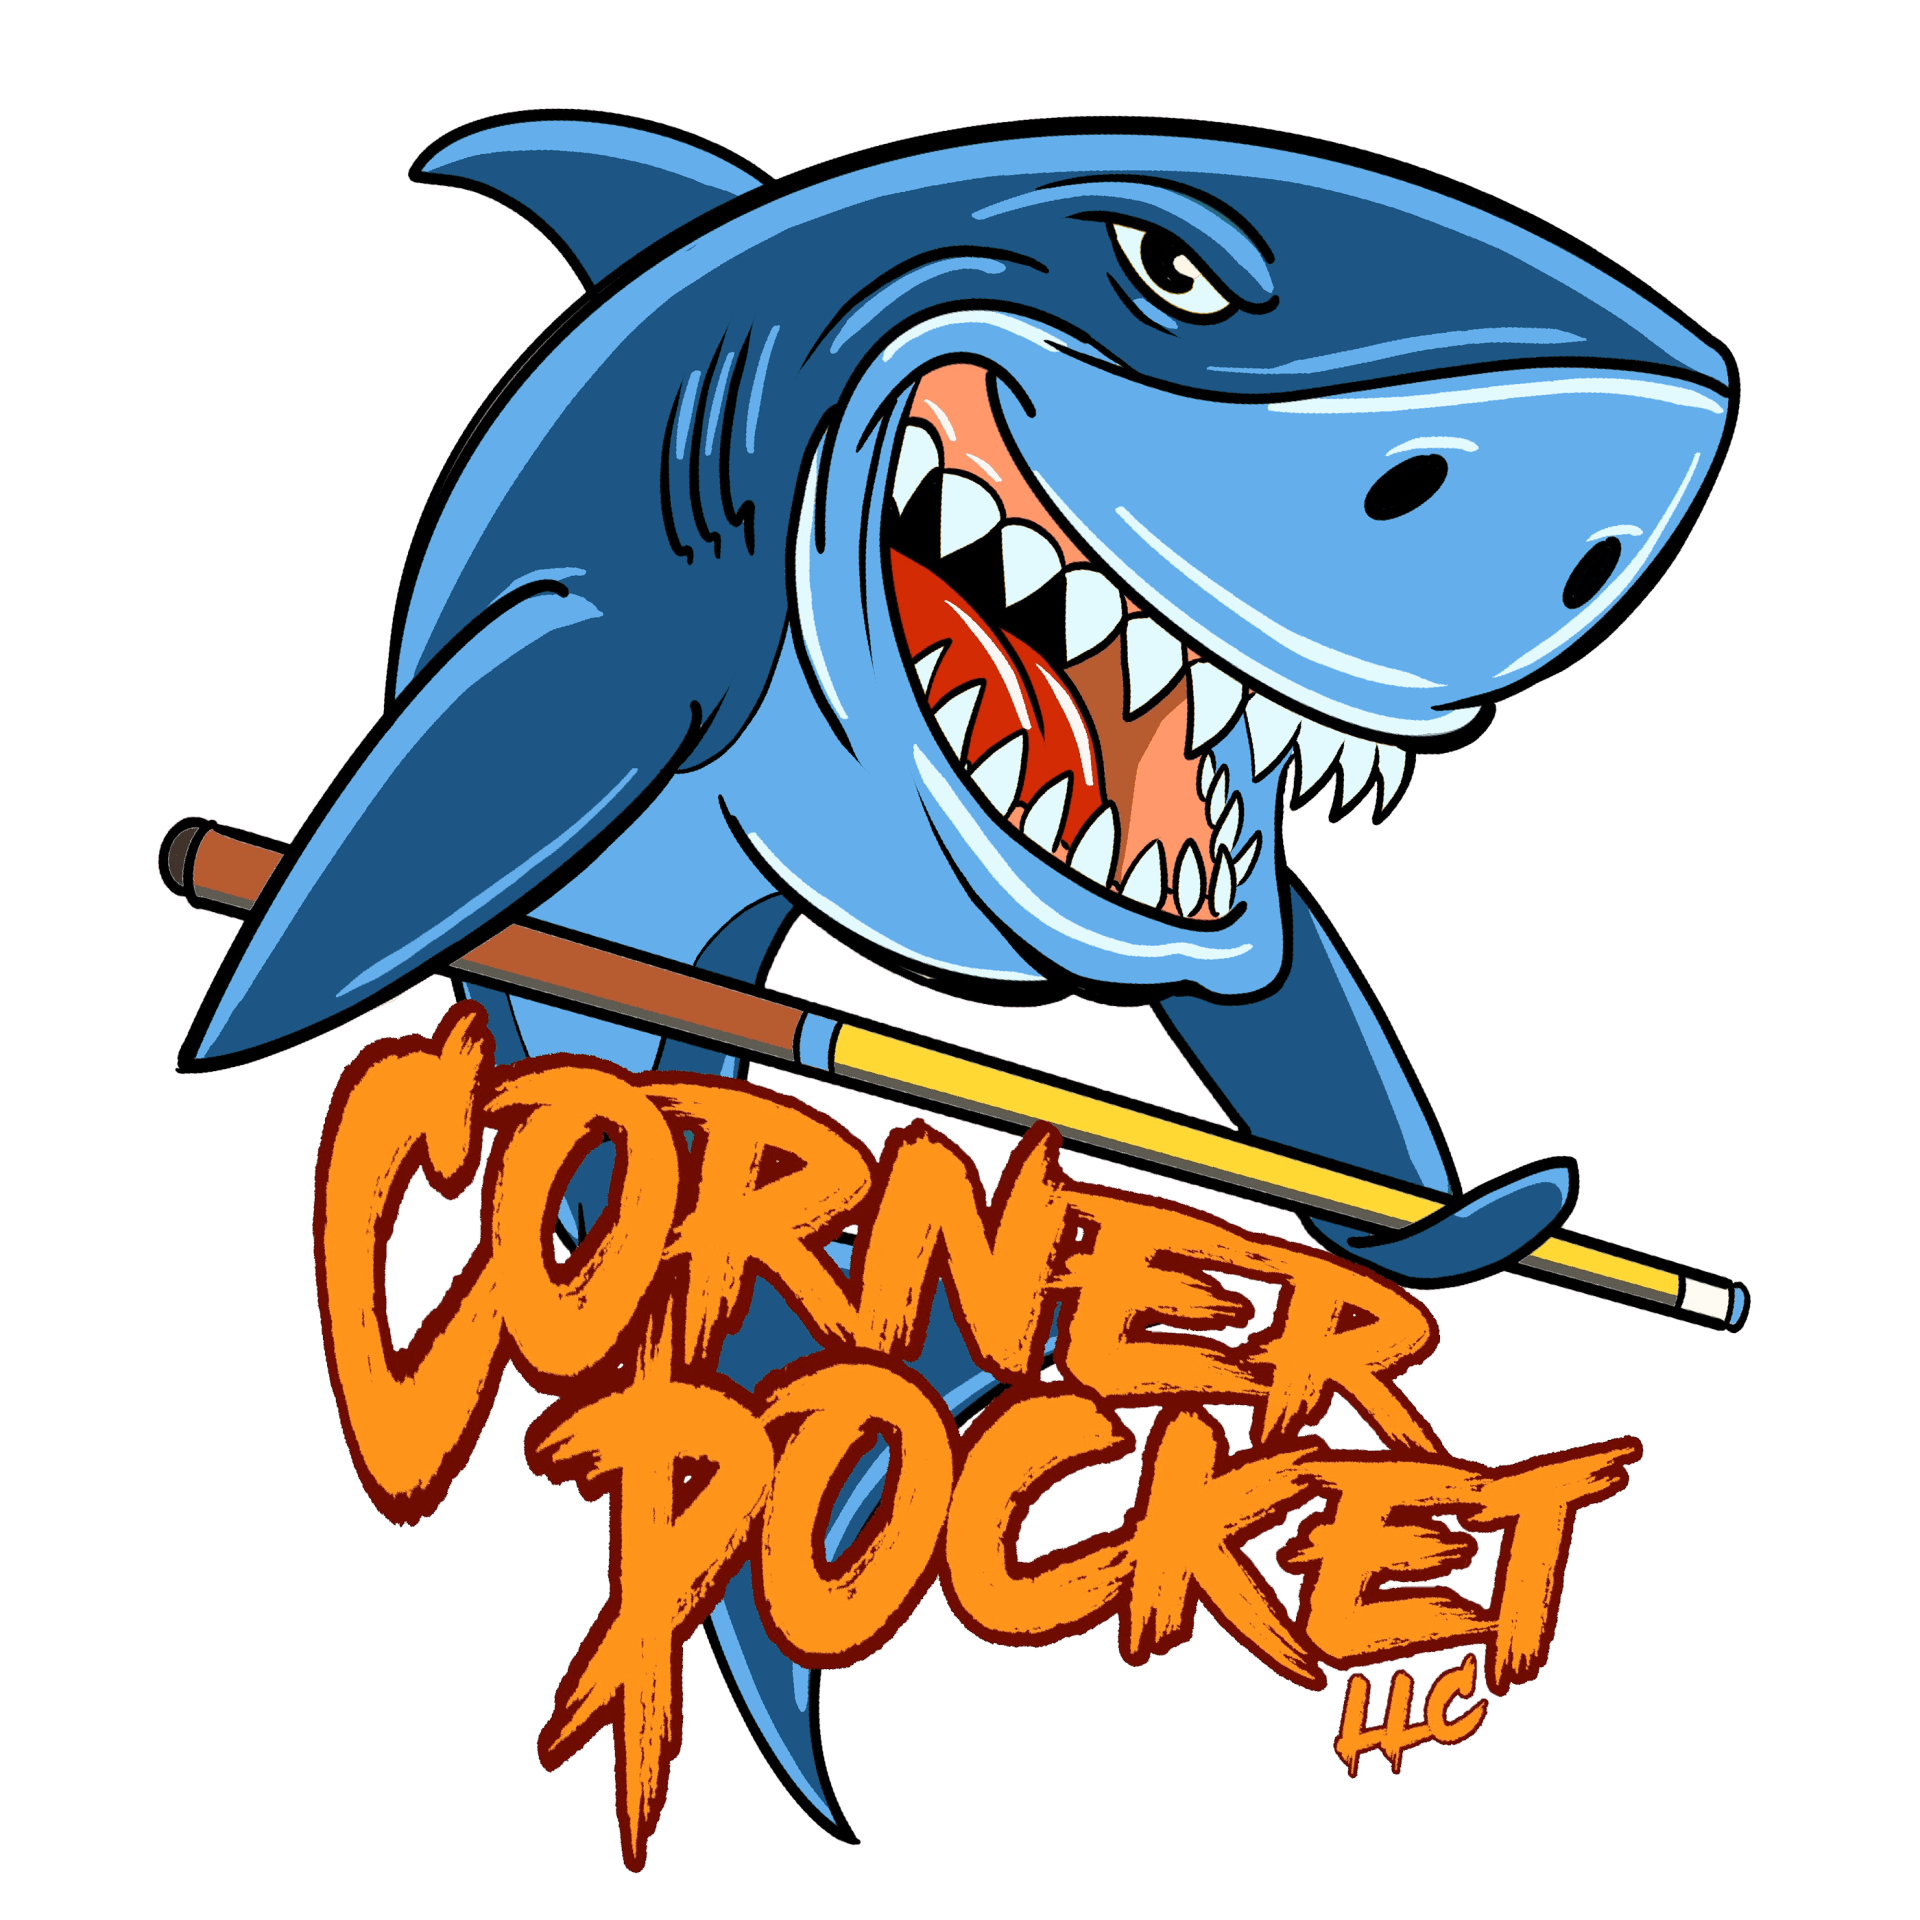 Corner Pocket LLC Pool Table Movers